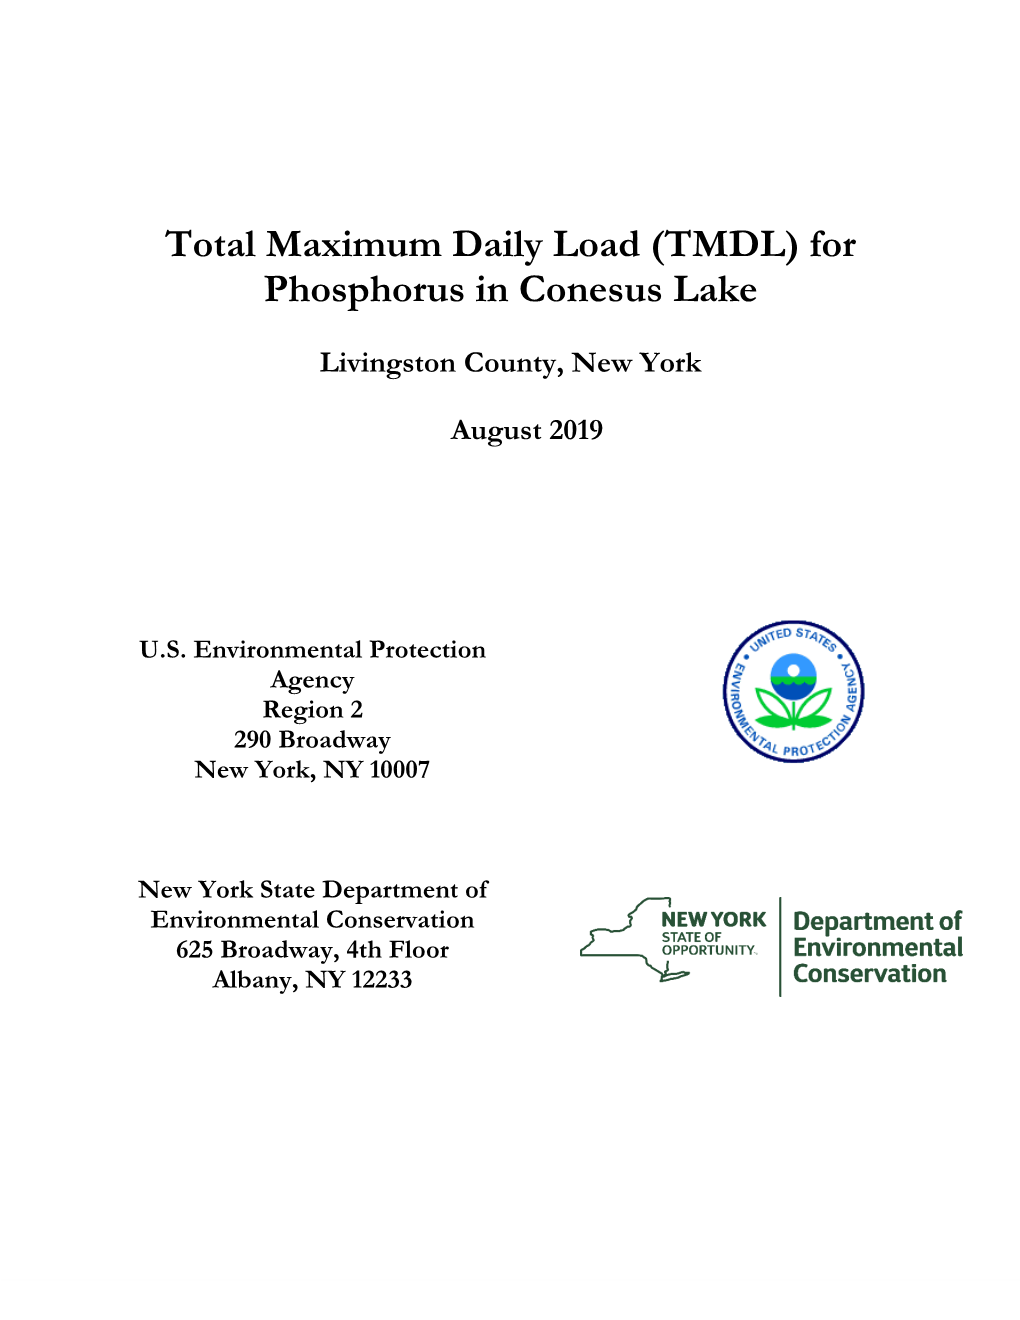 Total Maximum Daily Load (TMDL) for Phosphorus in Conesus Lake